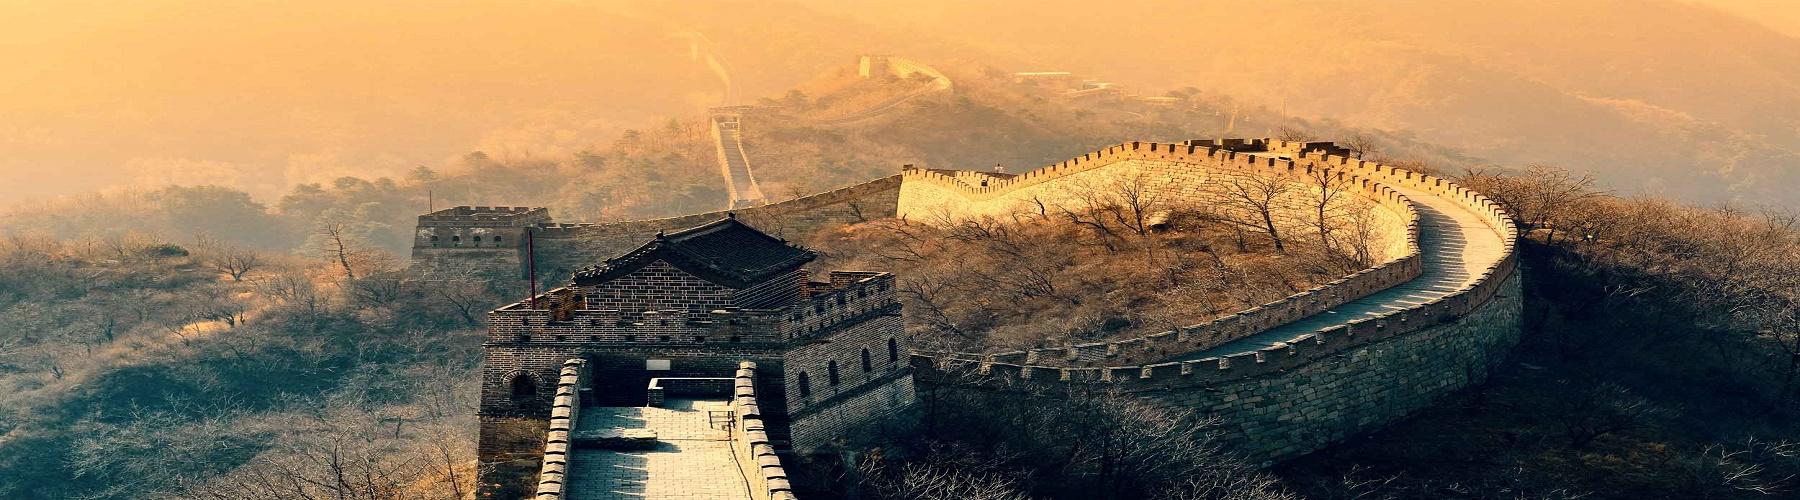 Посетить Китай и узнать о великой китайской цивилизации